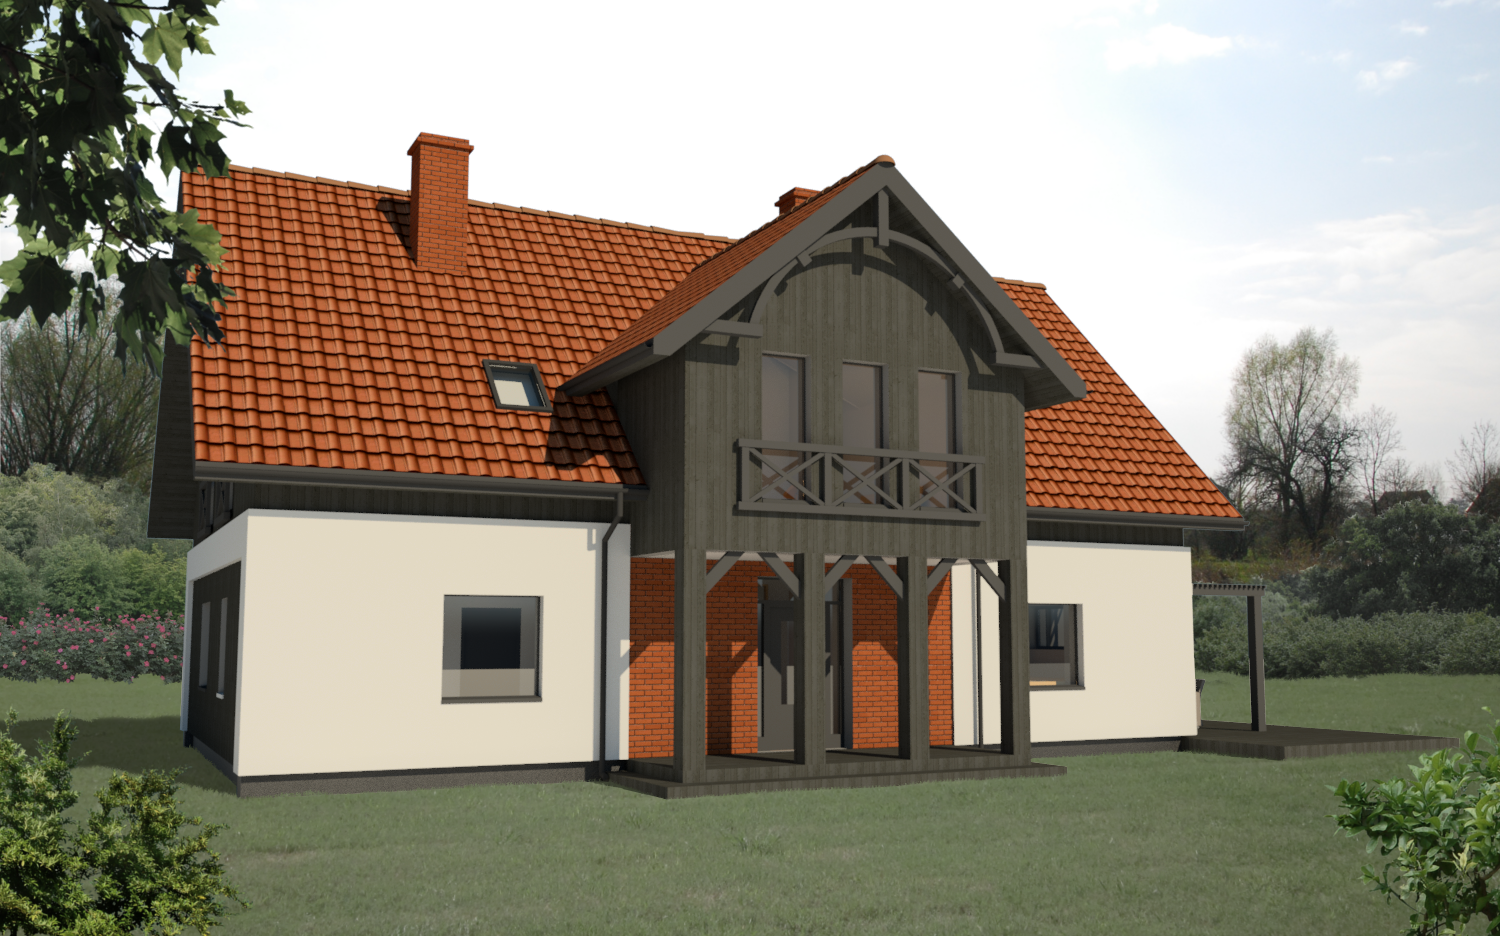 Projekt domu z charaktertystycznym dla Żuław podcieniem wejściowym.